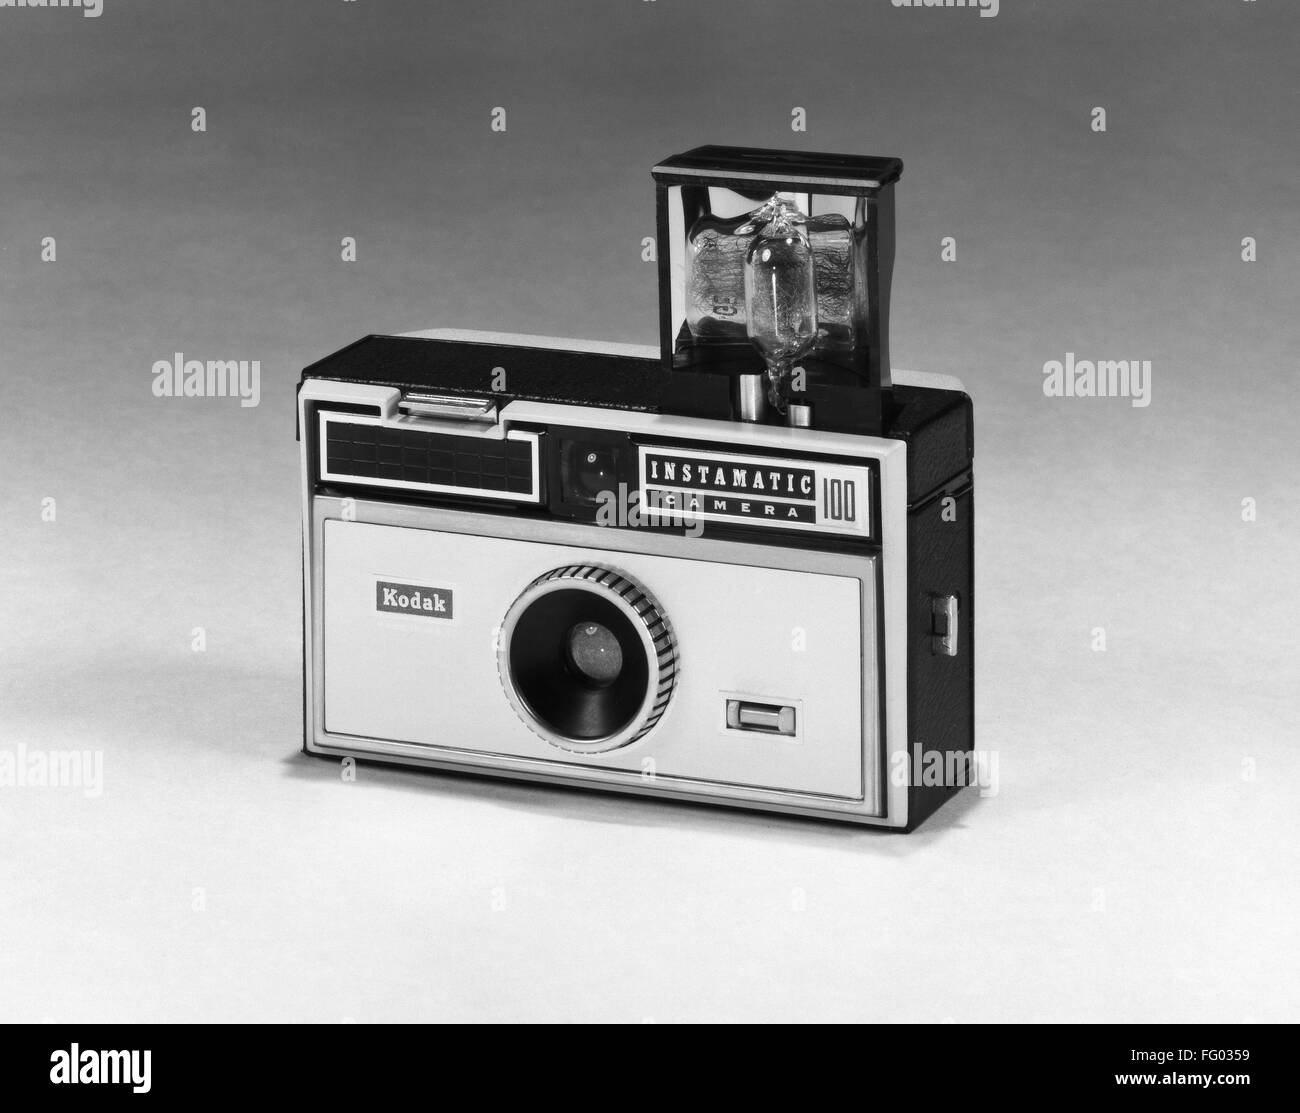 Fotocamera KODAK, c1963. /Nil Kodak Instamatic 100 fotocamera, c1963. Foto Stock